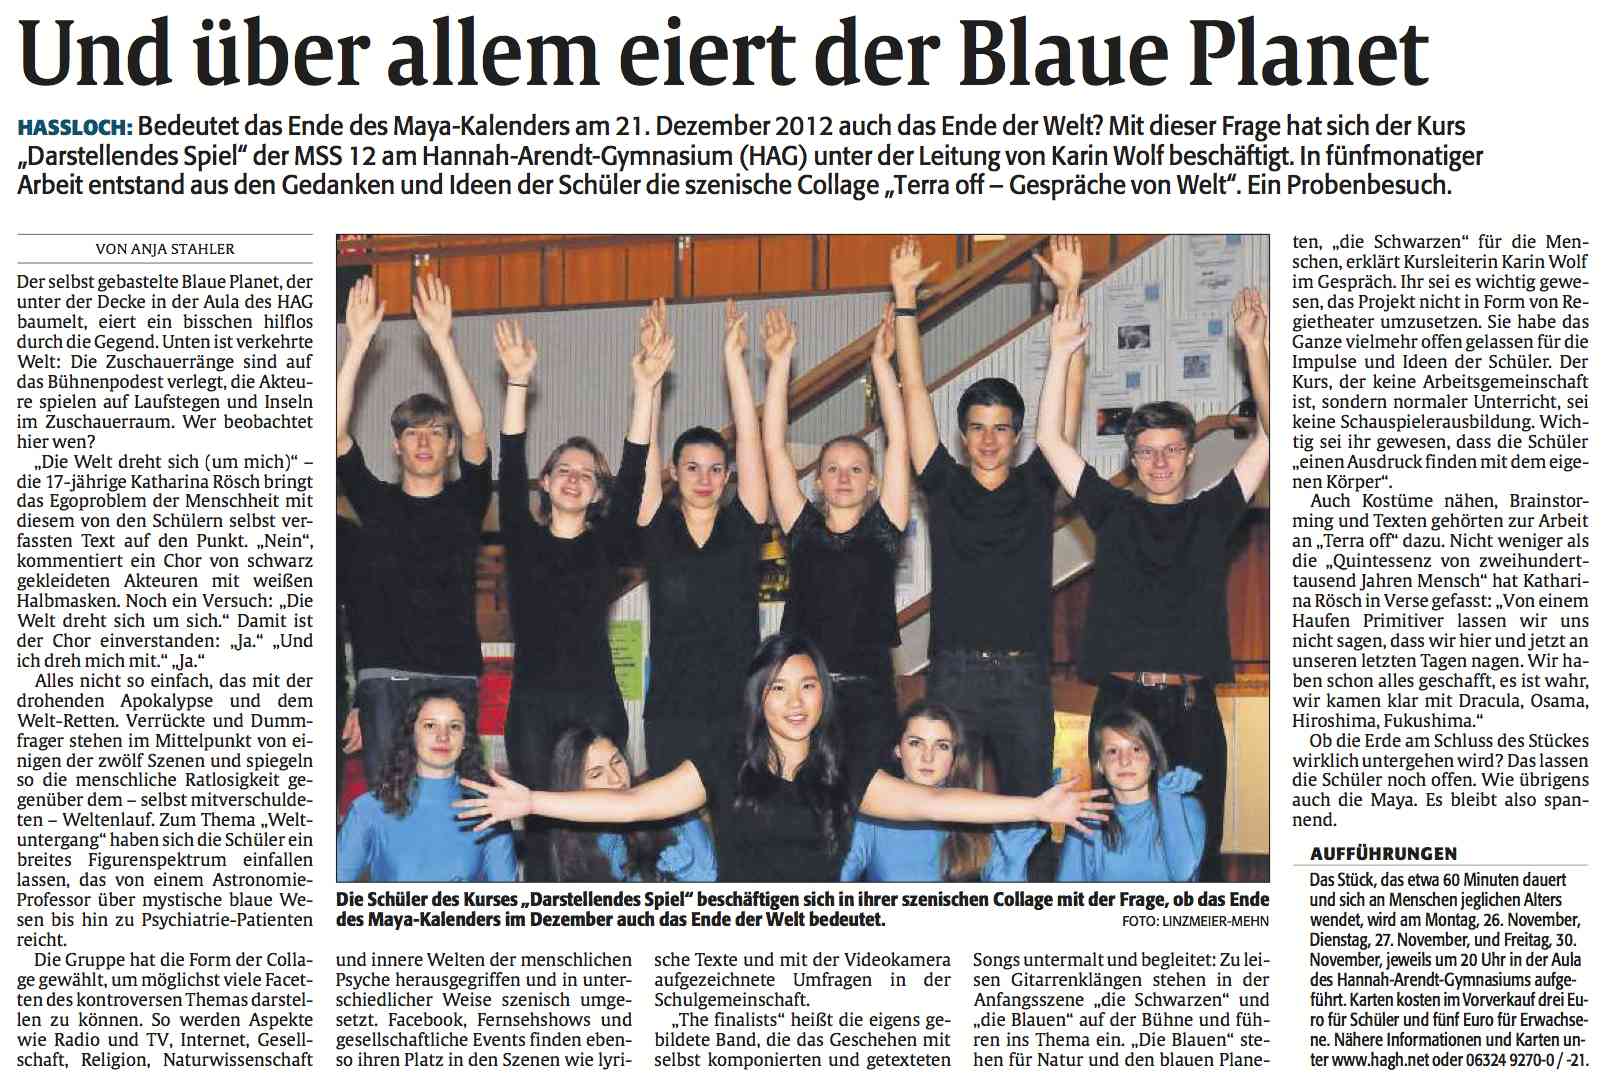 Die Rheinpfalz vom 24.11.2012 - Und über allem schwebt der Blaue Planet